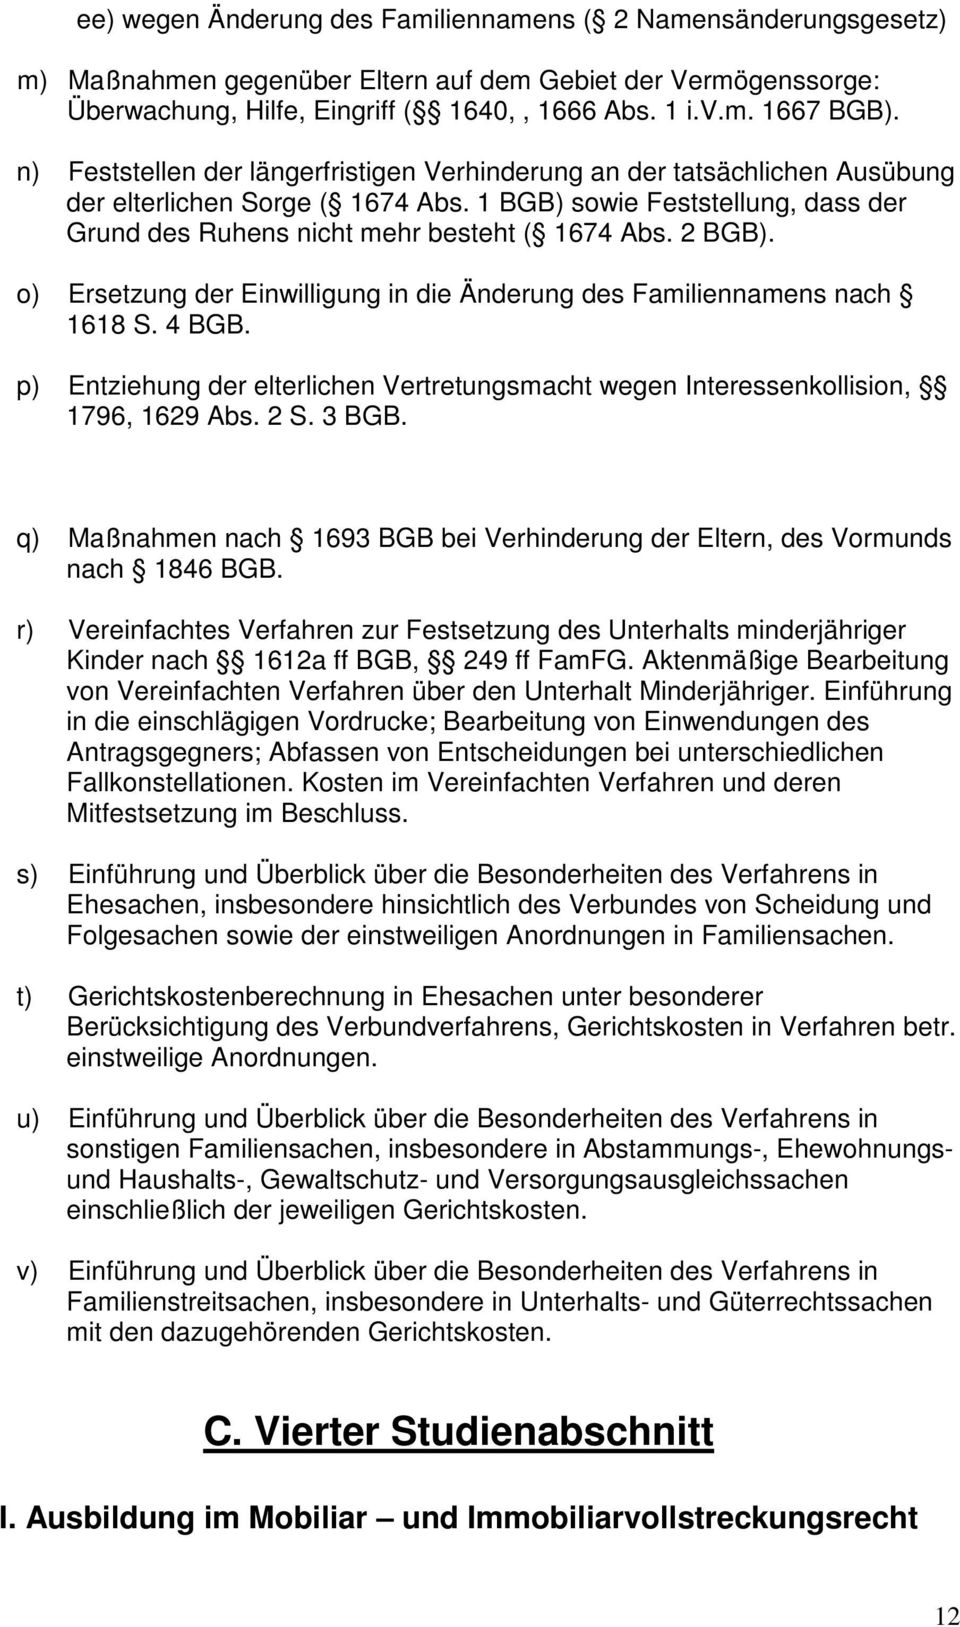 2 BGB). o) Ersetzung der Einwilligung in die Änderung des Familiennamens nach 1618 S. 4 BGB. p) Entziehung der elterlichen Vertretungsmacht wegen Interessenkollision, 1796, 1629 Abs. 2 S. 3 BGB.